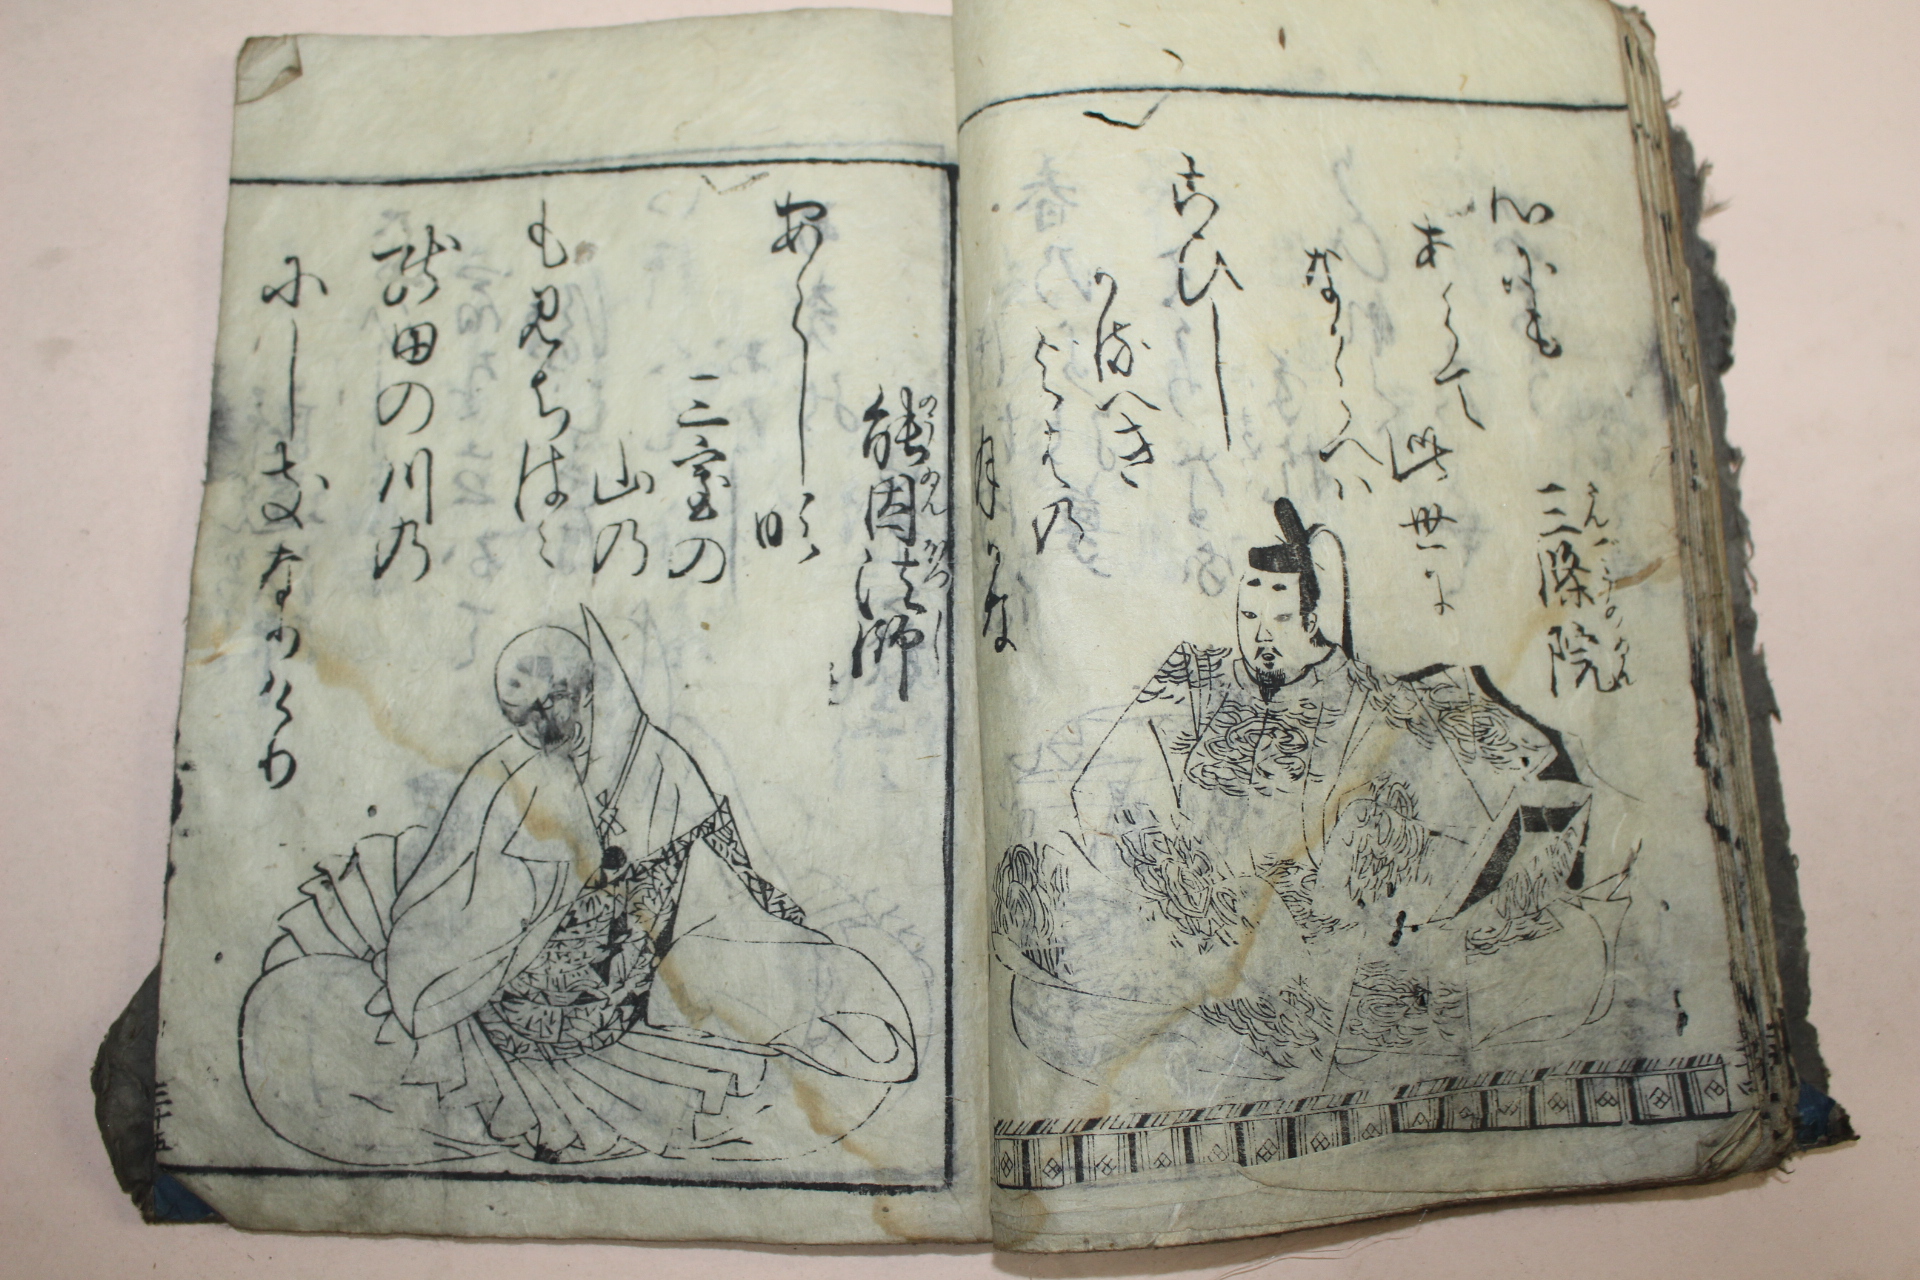 에도시기 일본목판본 어가백인백수(御家百人百首)